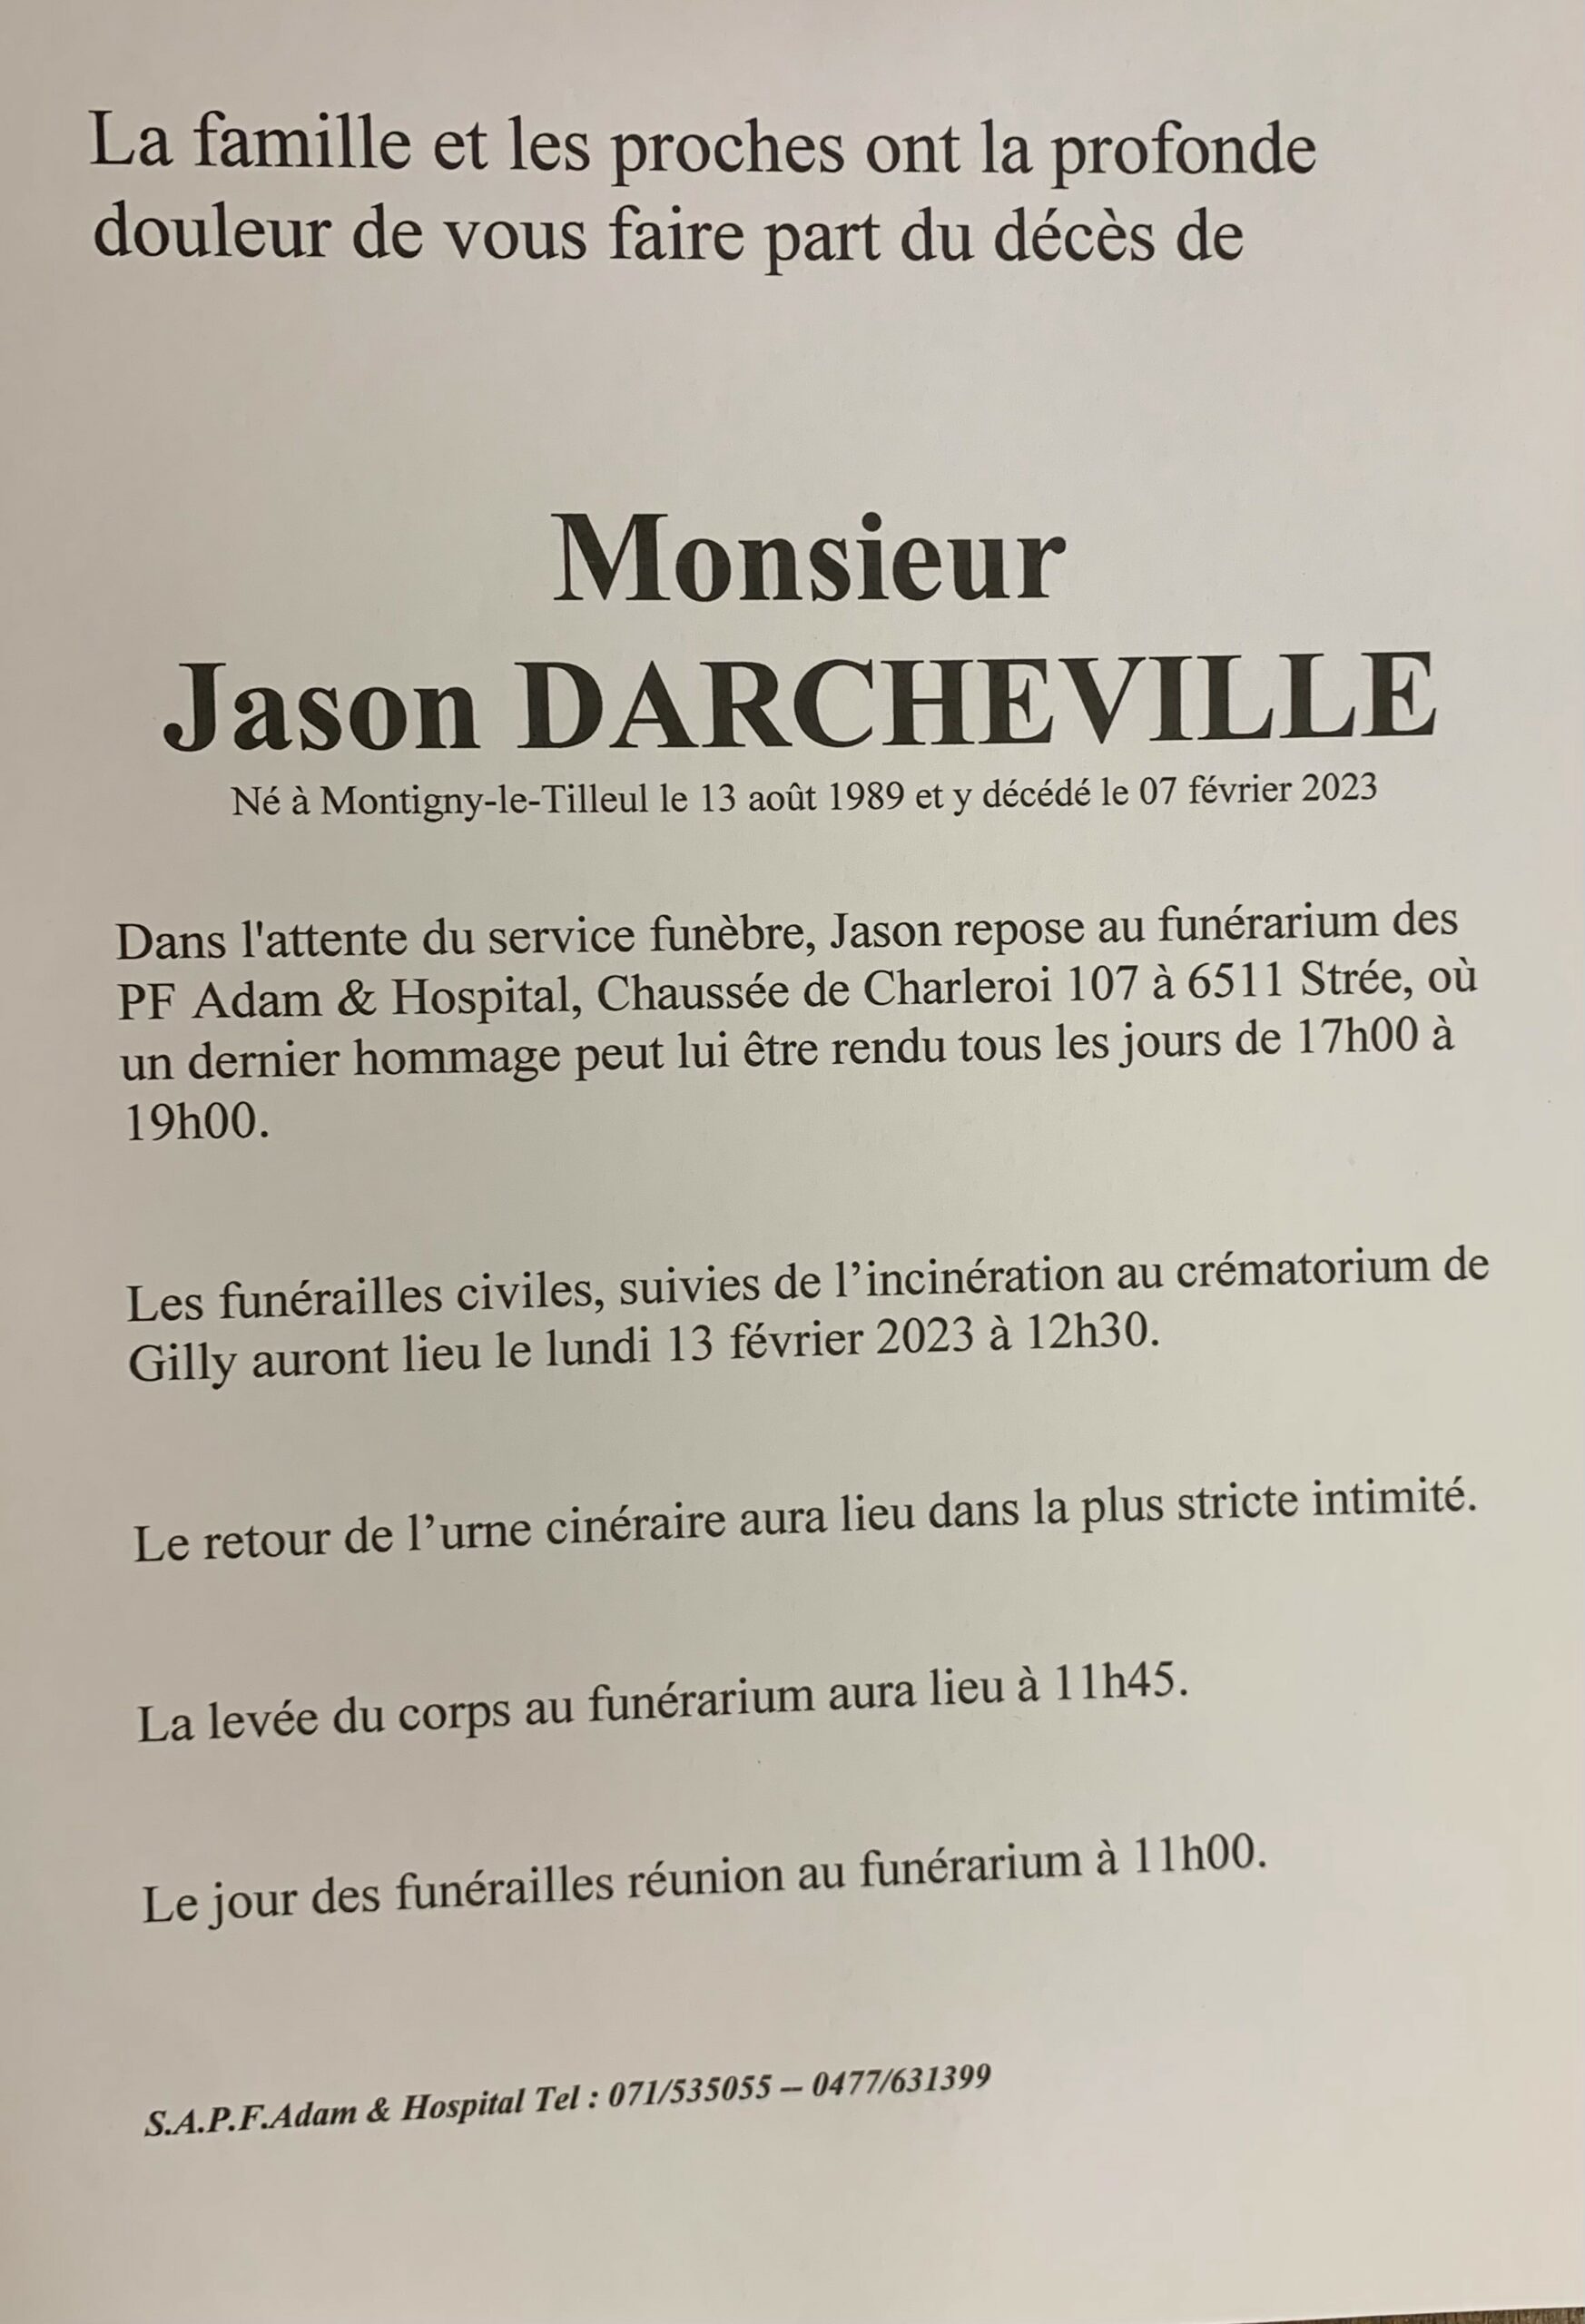 Monsieur Jason DARCHEVILLE scaled | Funérailles Adam Hospital